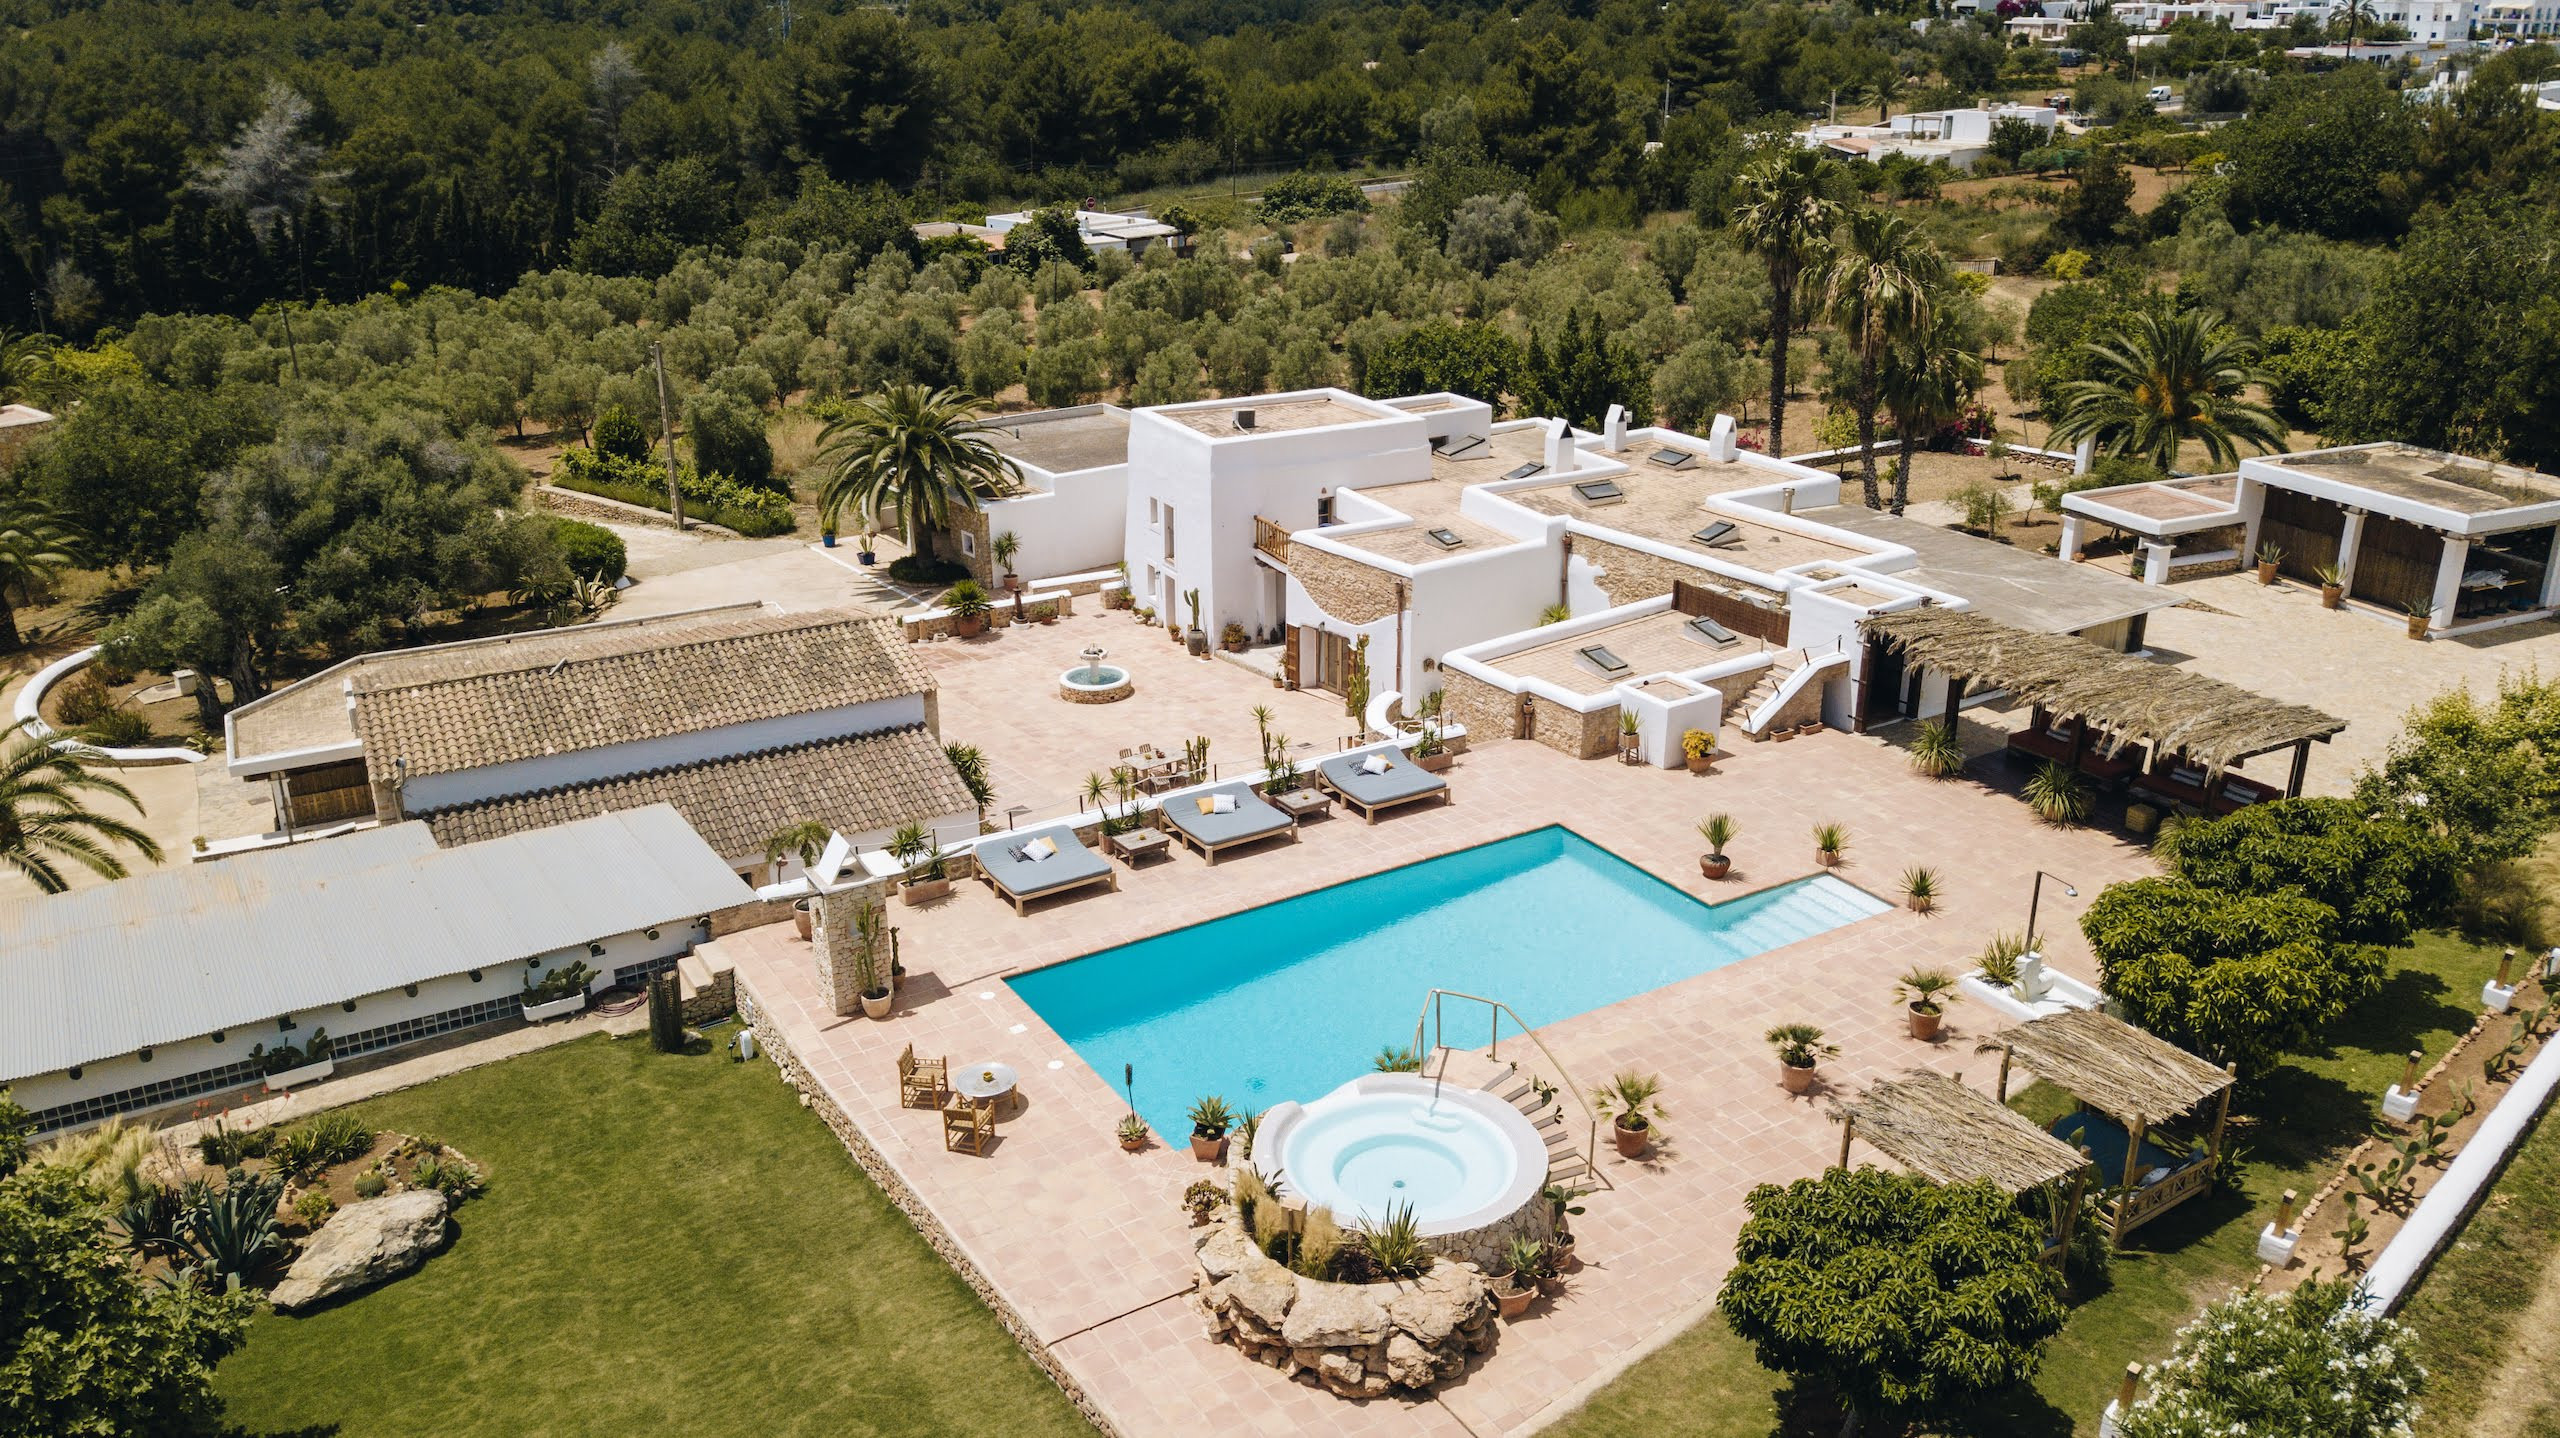 Vue aérienne de la villa Las Hadas à Ibiza avec sa piscine, terrasse et jacuzzi